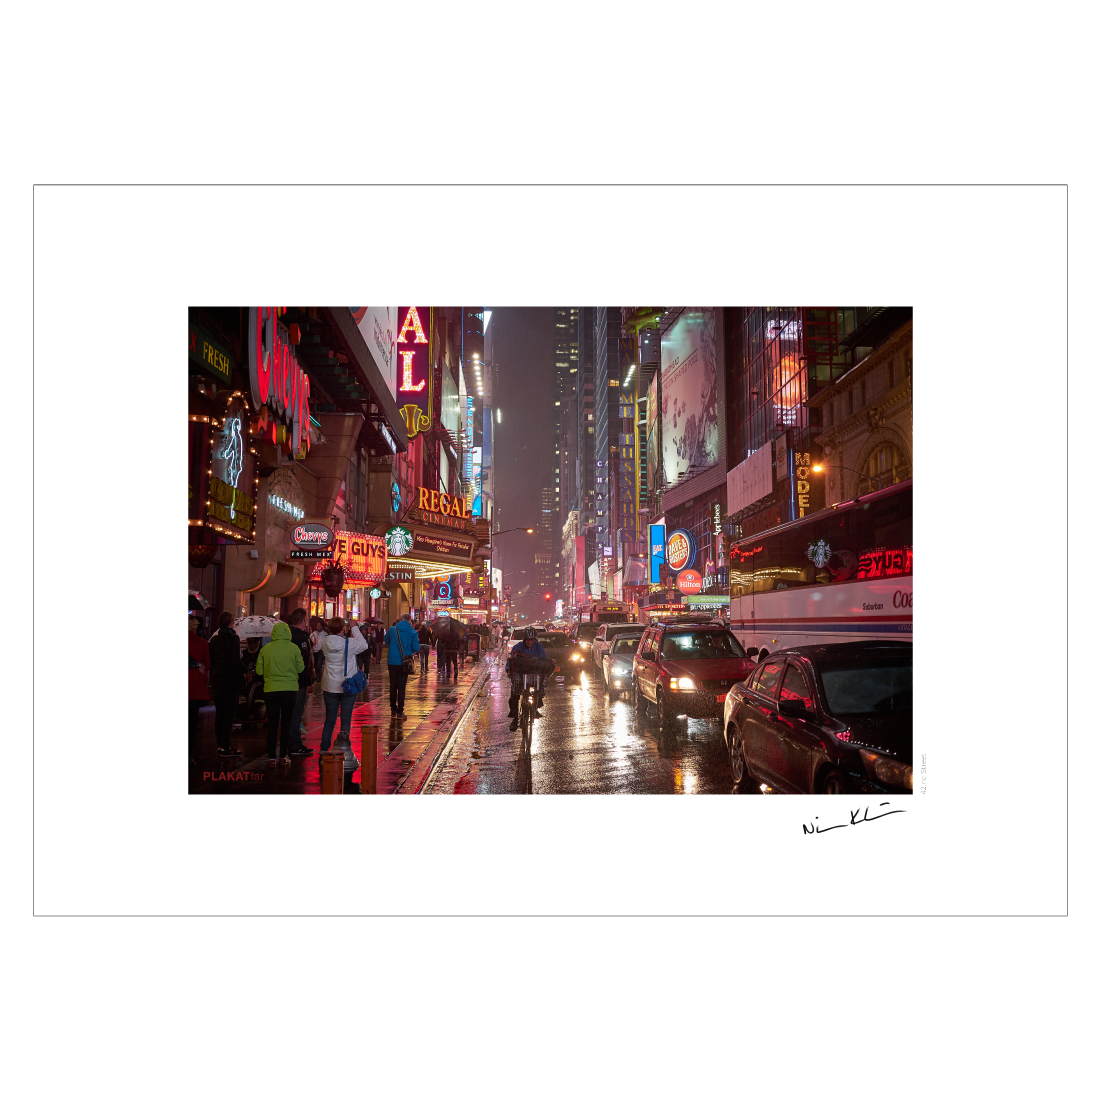 New York plakat med neonlys og regnvejr på 42nd Street